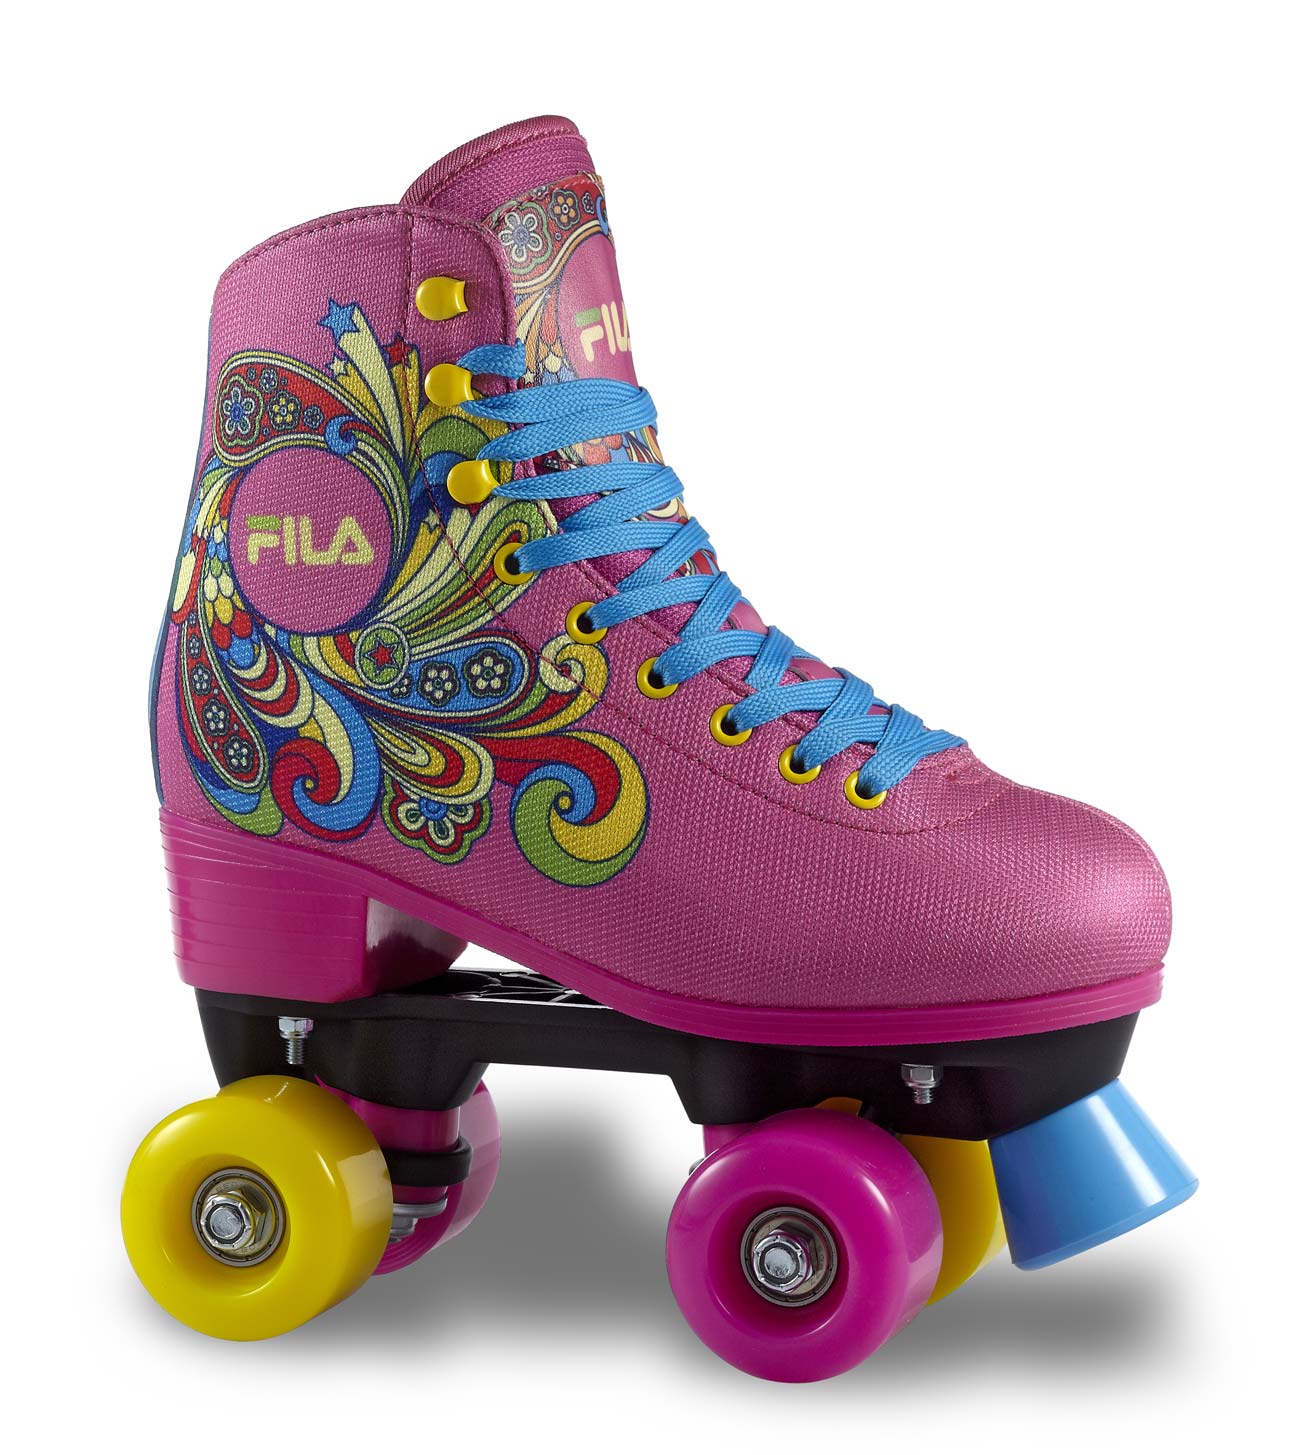 Women's roller skates